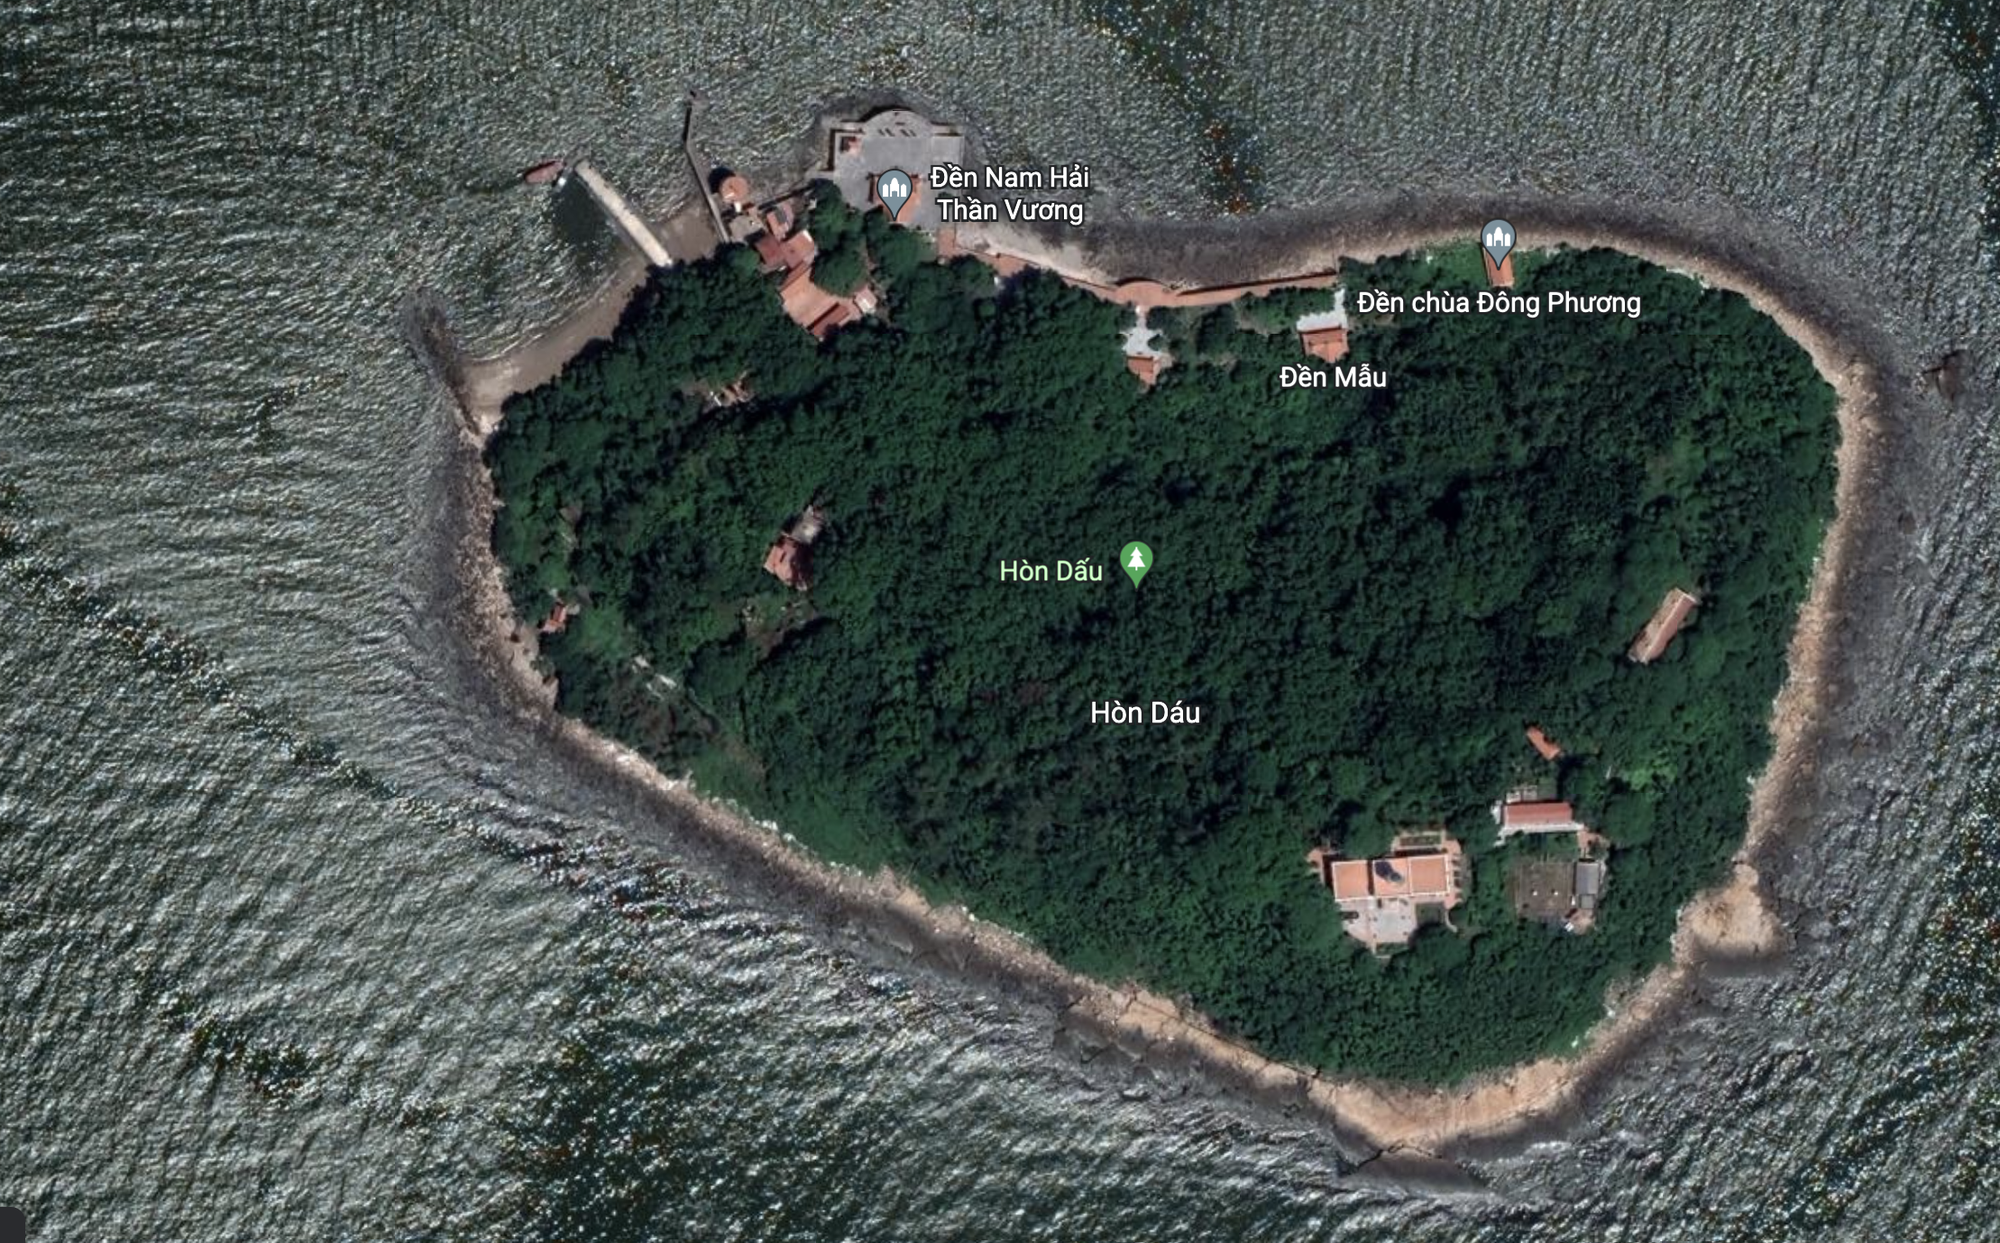  Khám phá đảo bé hạt tiêu có hải đăng cổ nhất Việt Nam, 124 năm vững vàng trước sóng gió - Ảnh 1.